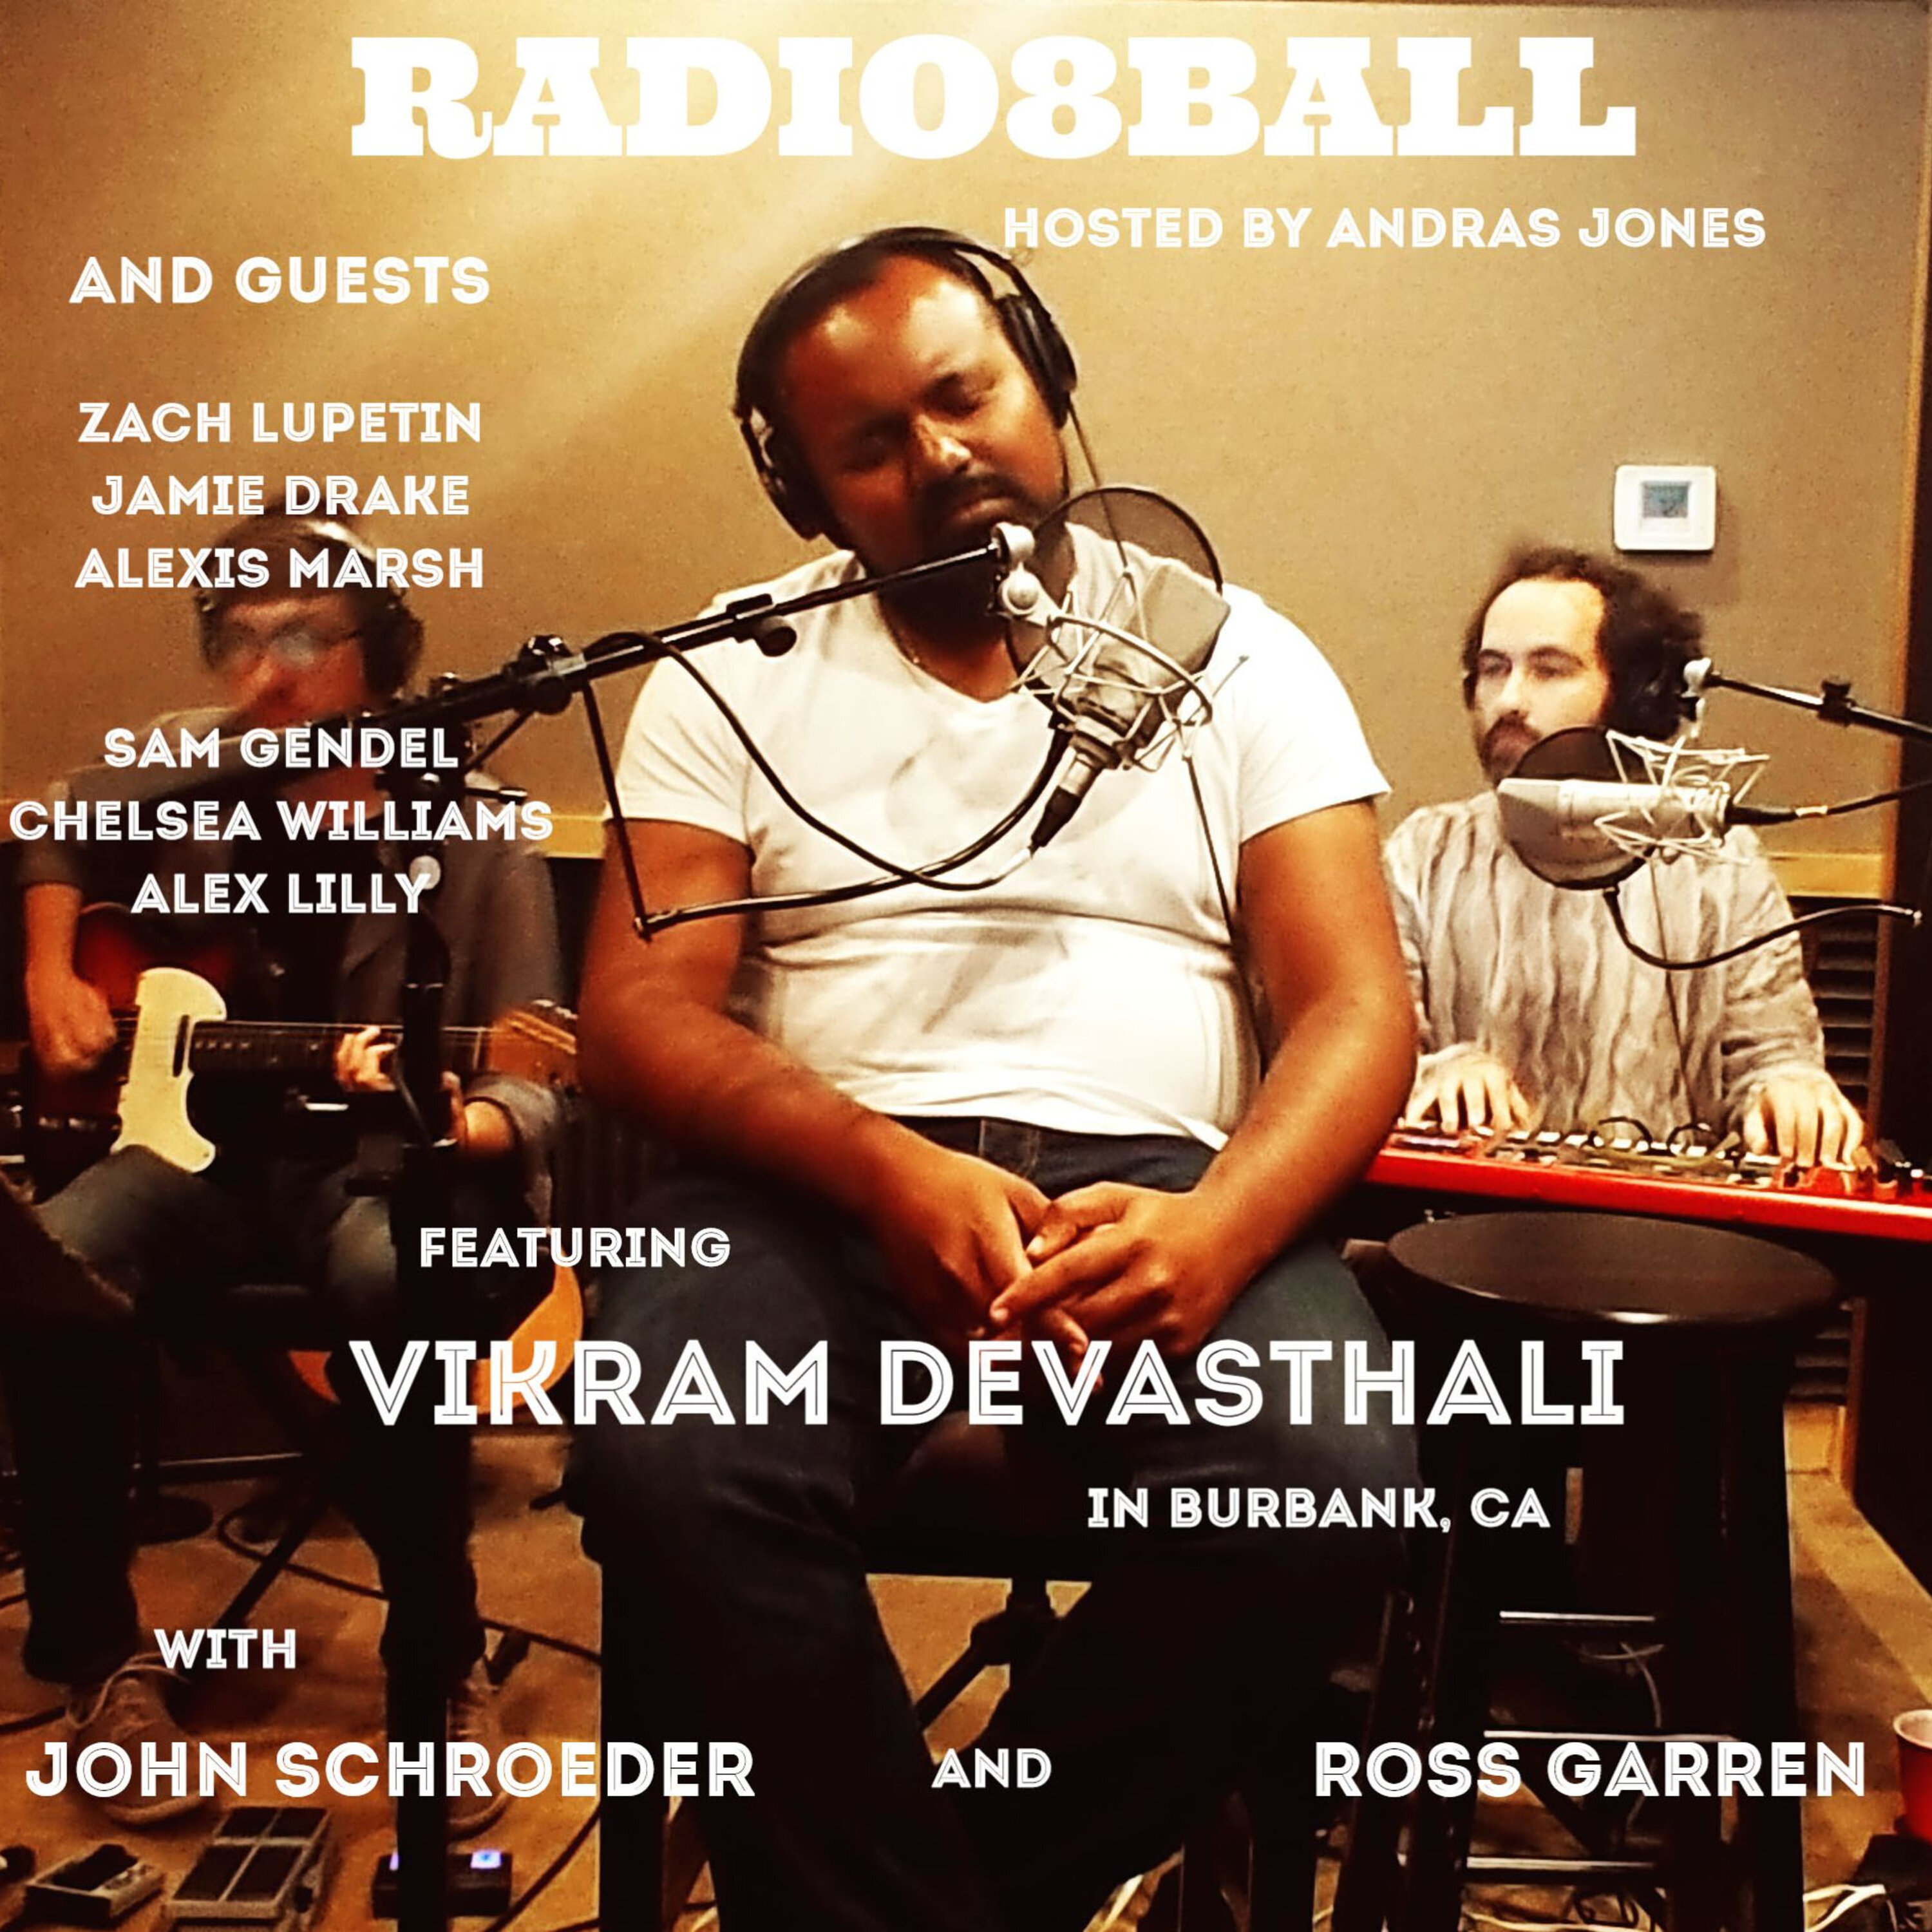 581: Sam Gendel & Vikram Devasthali and Ross Garren with John Schroeder (April 28, 2019)